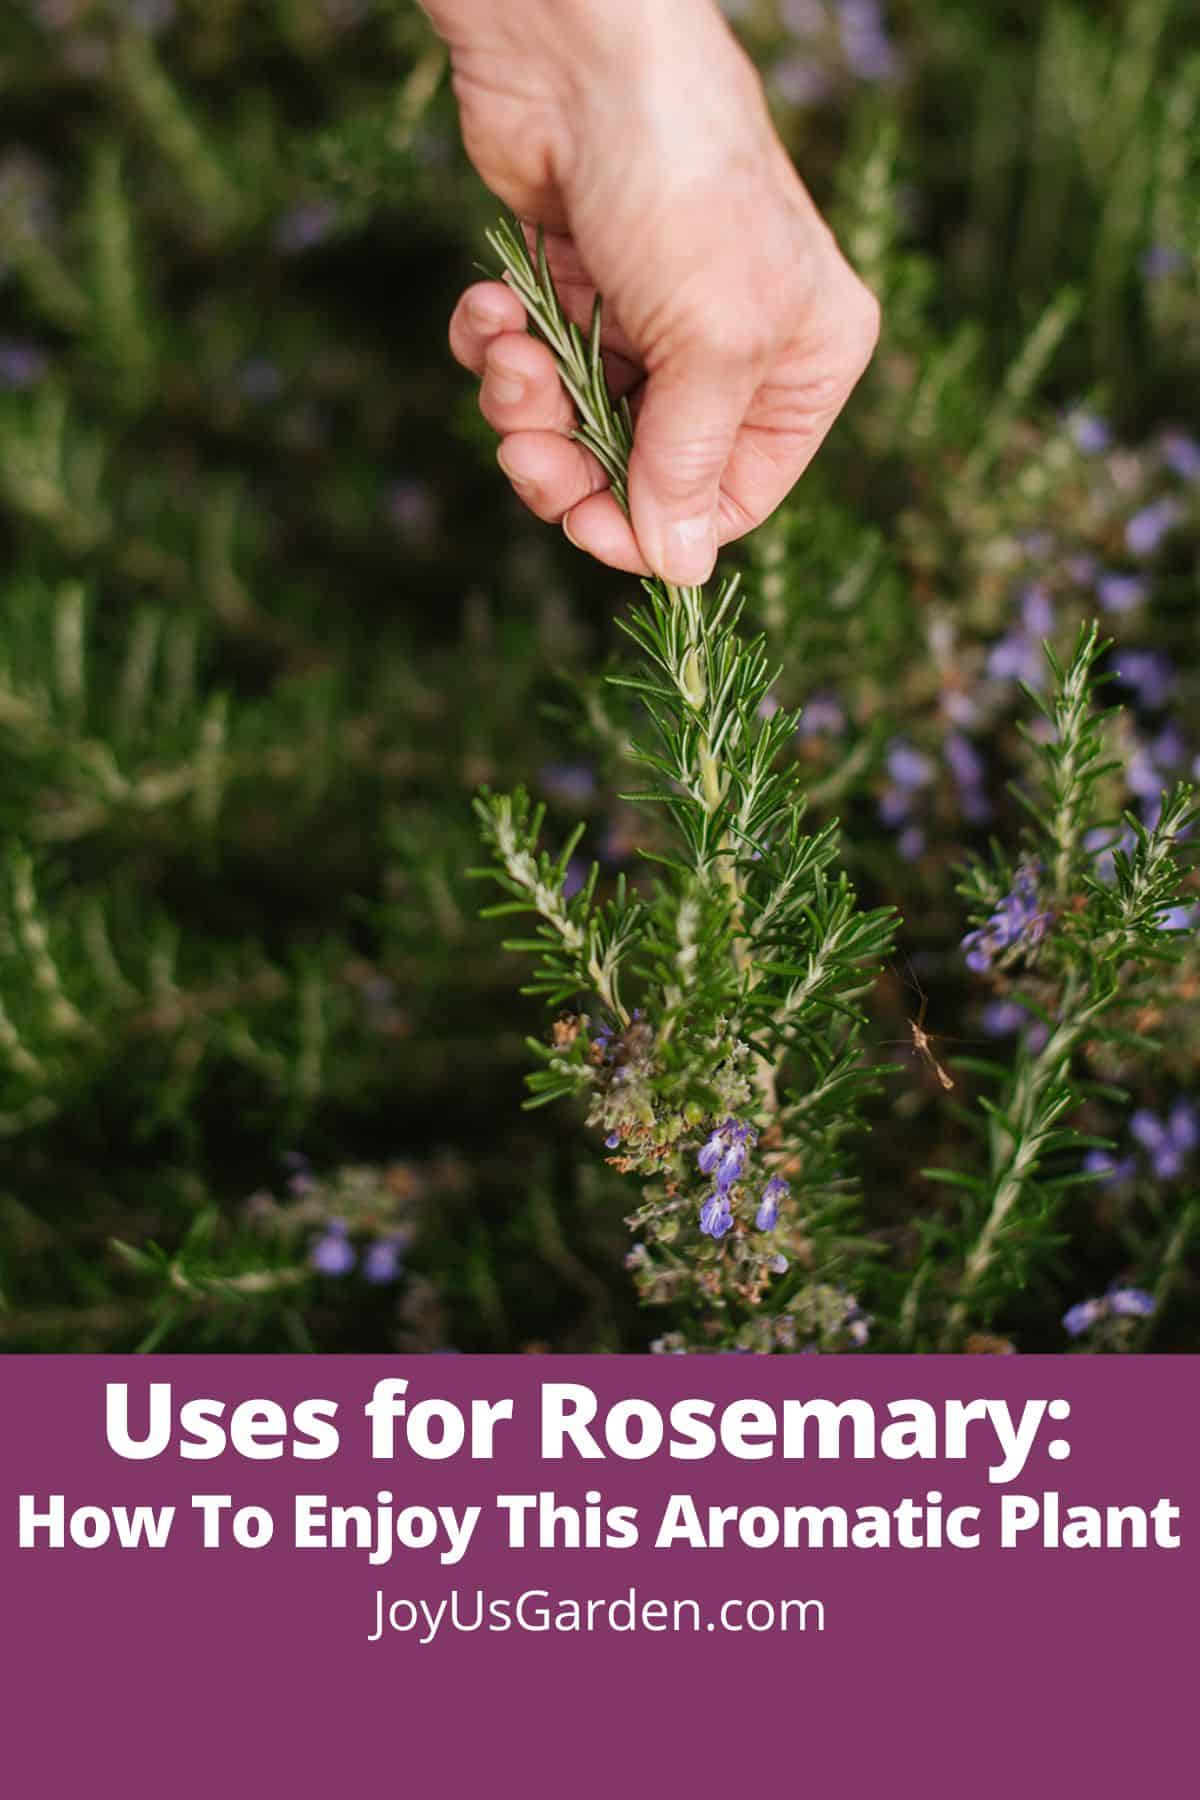  ការប្រើប្រាស់សម្រាប់ Rosemary: របៀបរីករាយជាមួយរុក្ខជាតិក្រអូបនេះ។